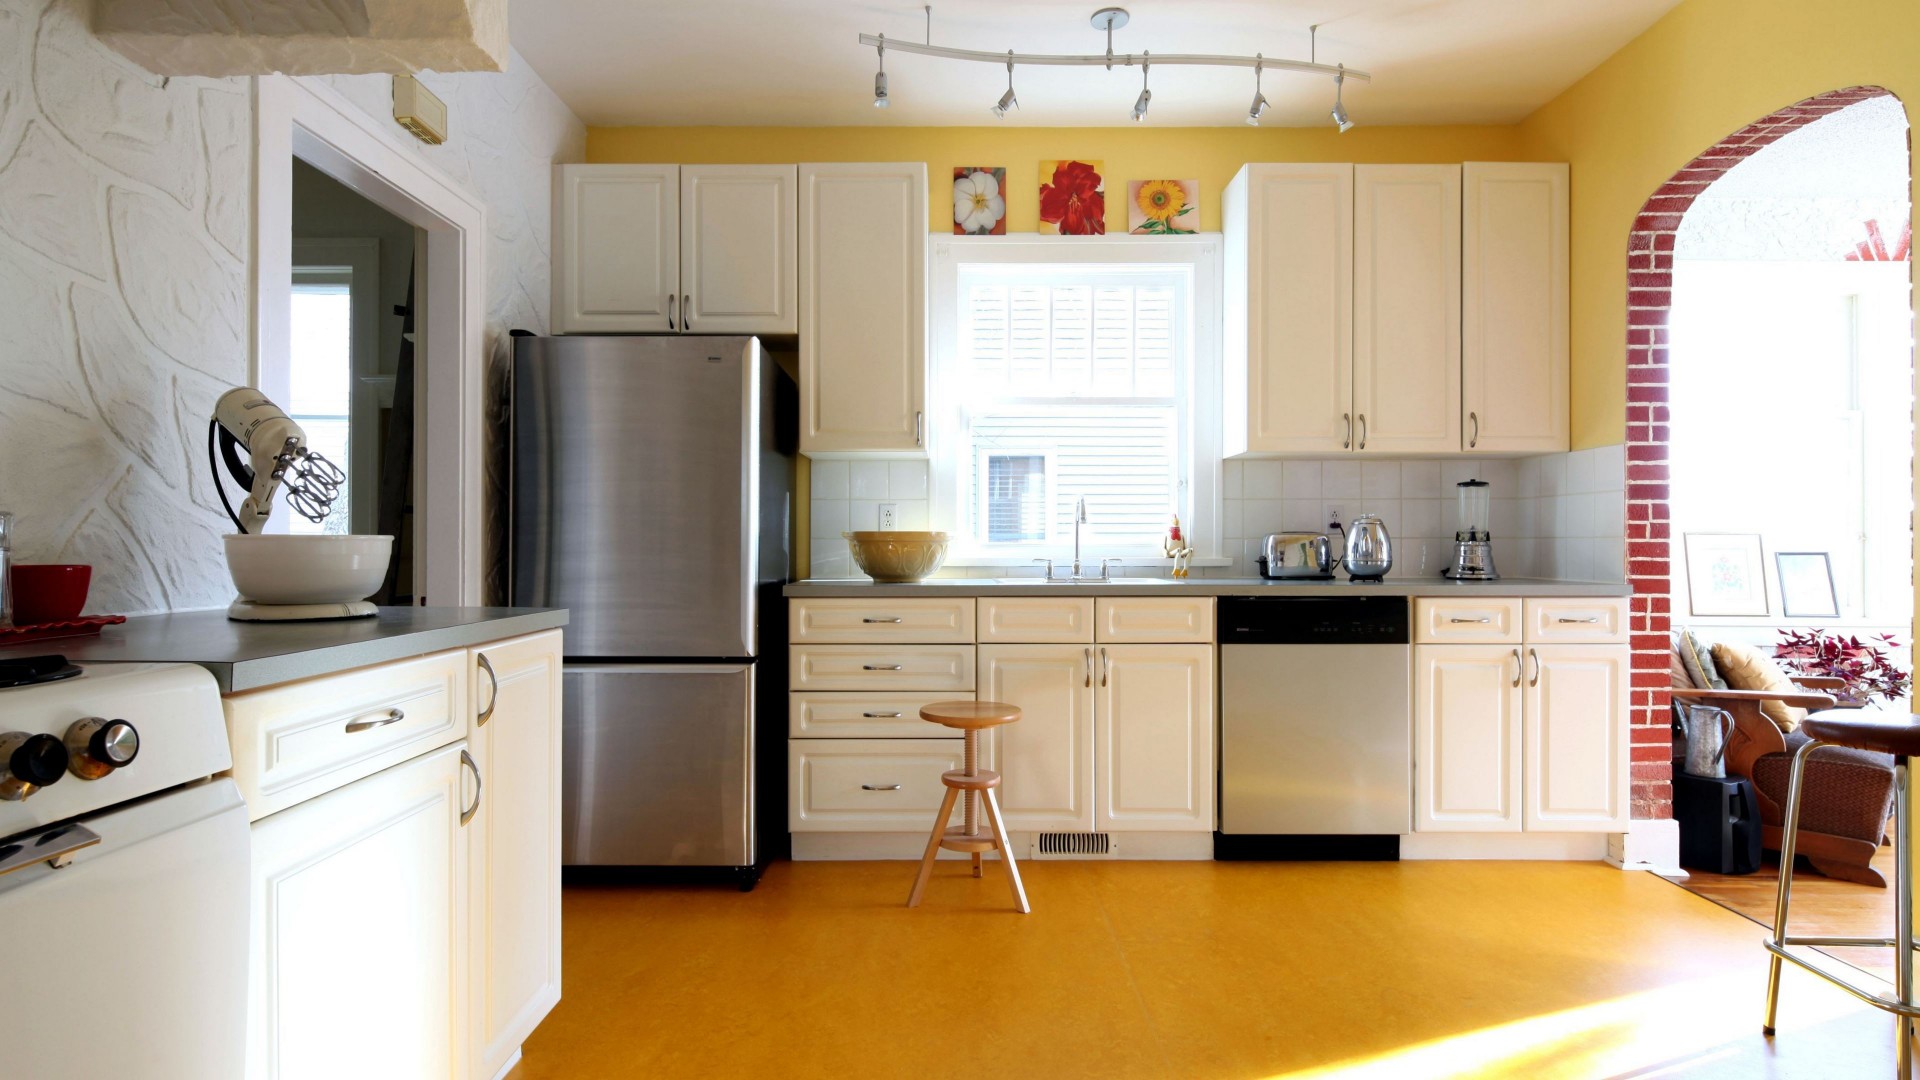 kitchen design in simple